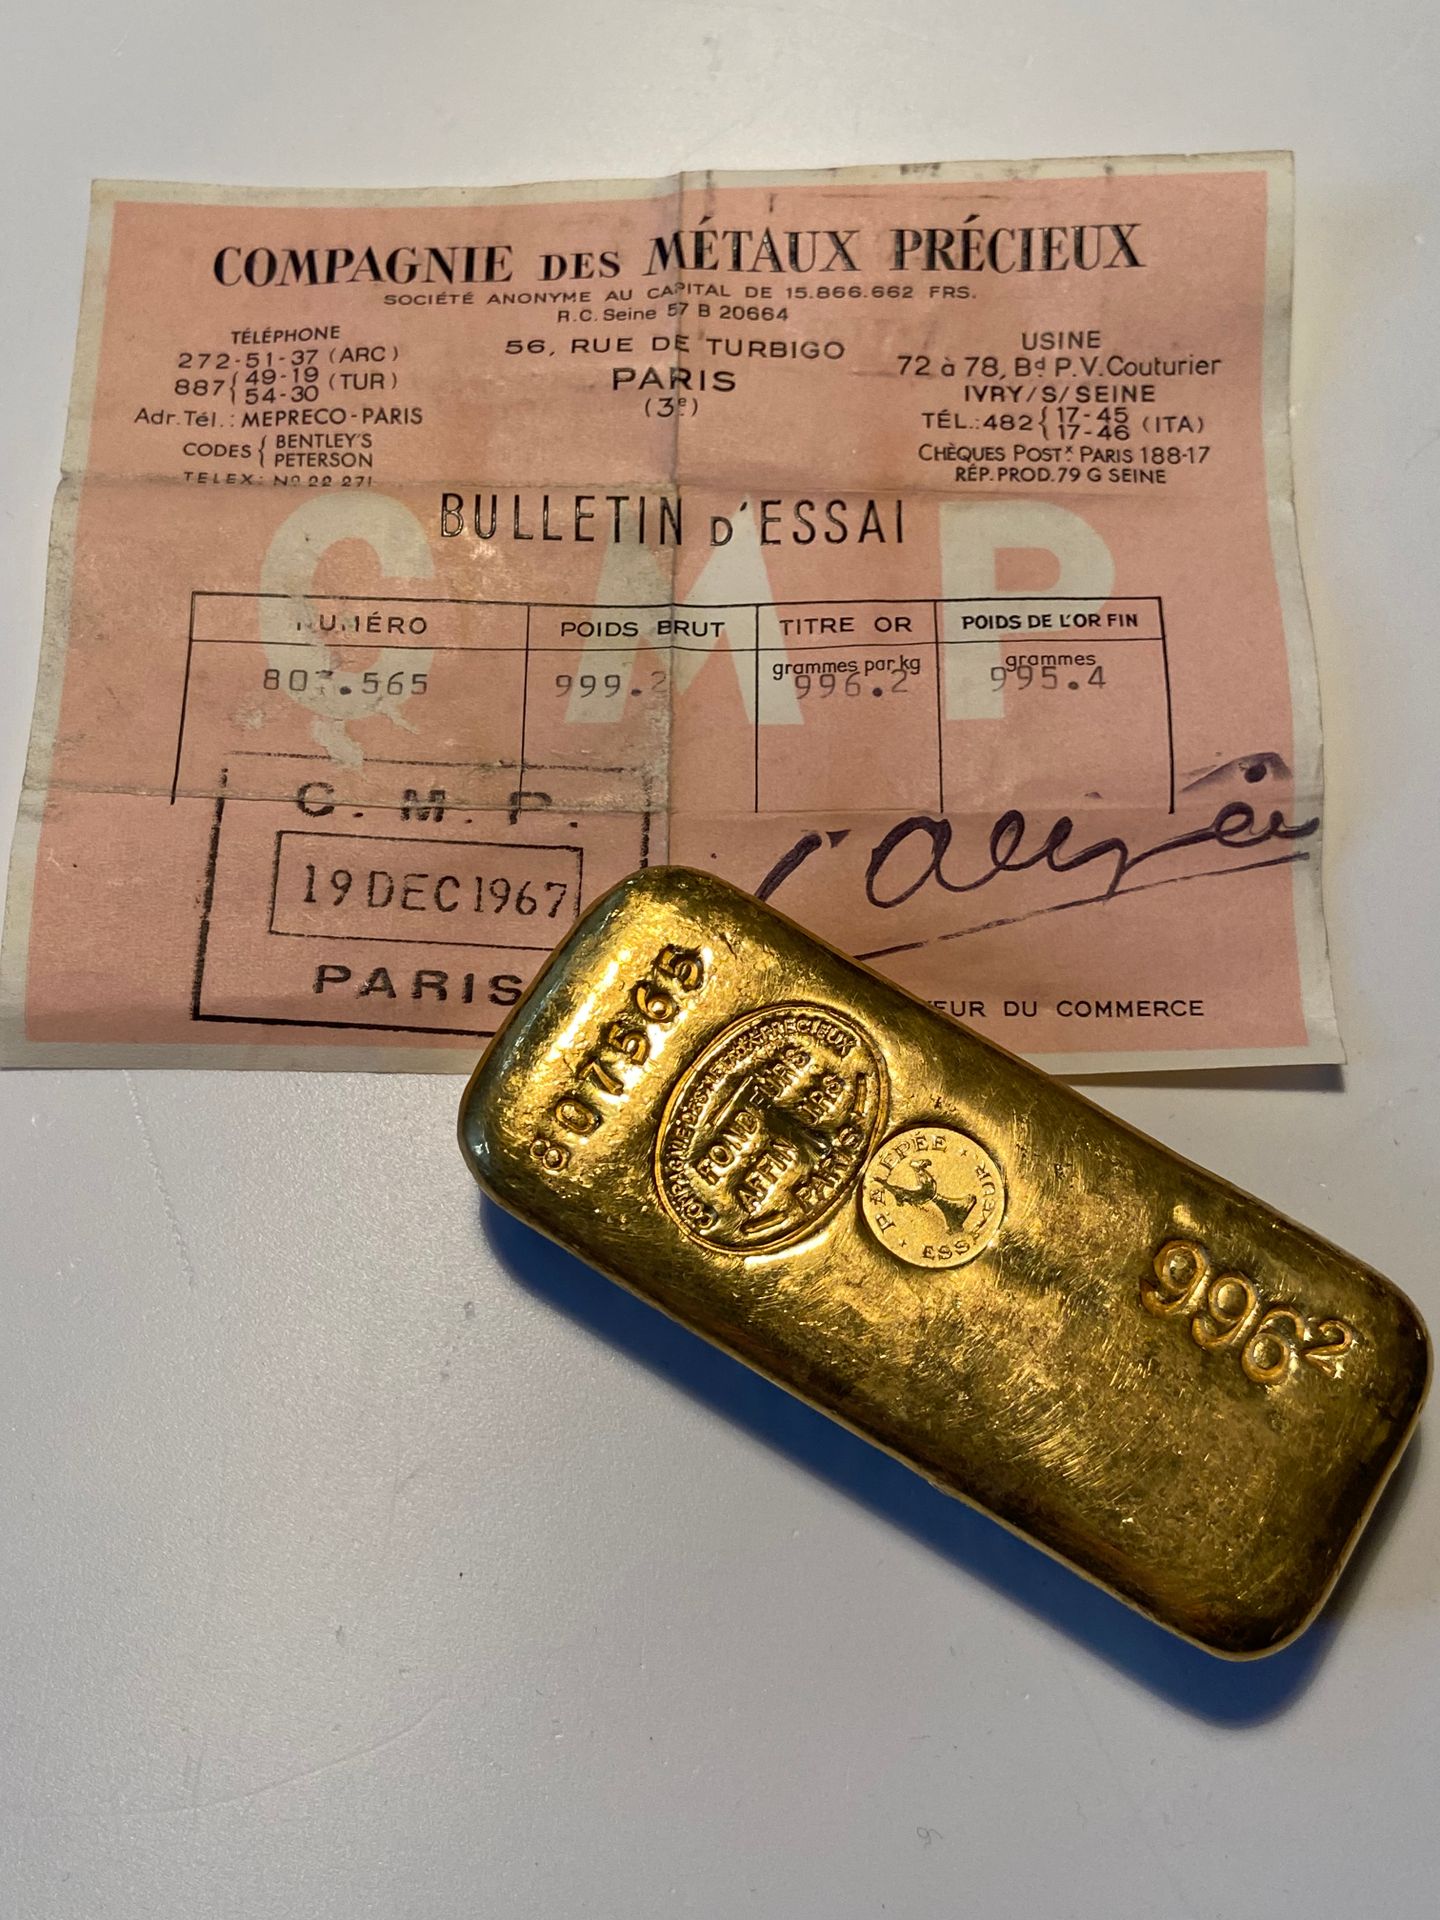 Null 
Un lingot d'or portant le numéro 807565, poids brut 999,2 gr.
Certificat d&hellip;